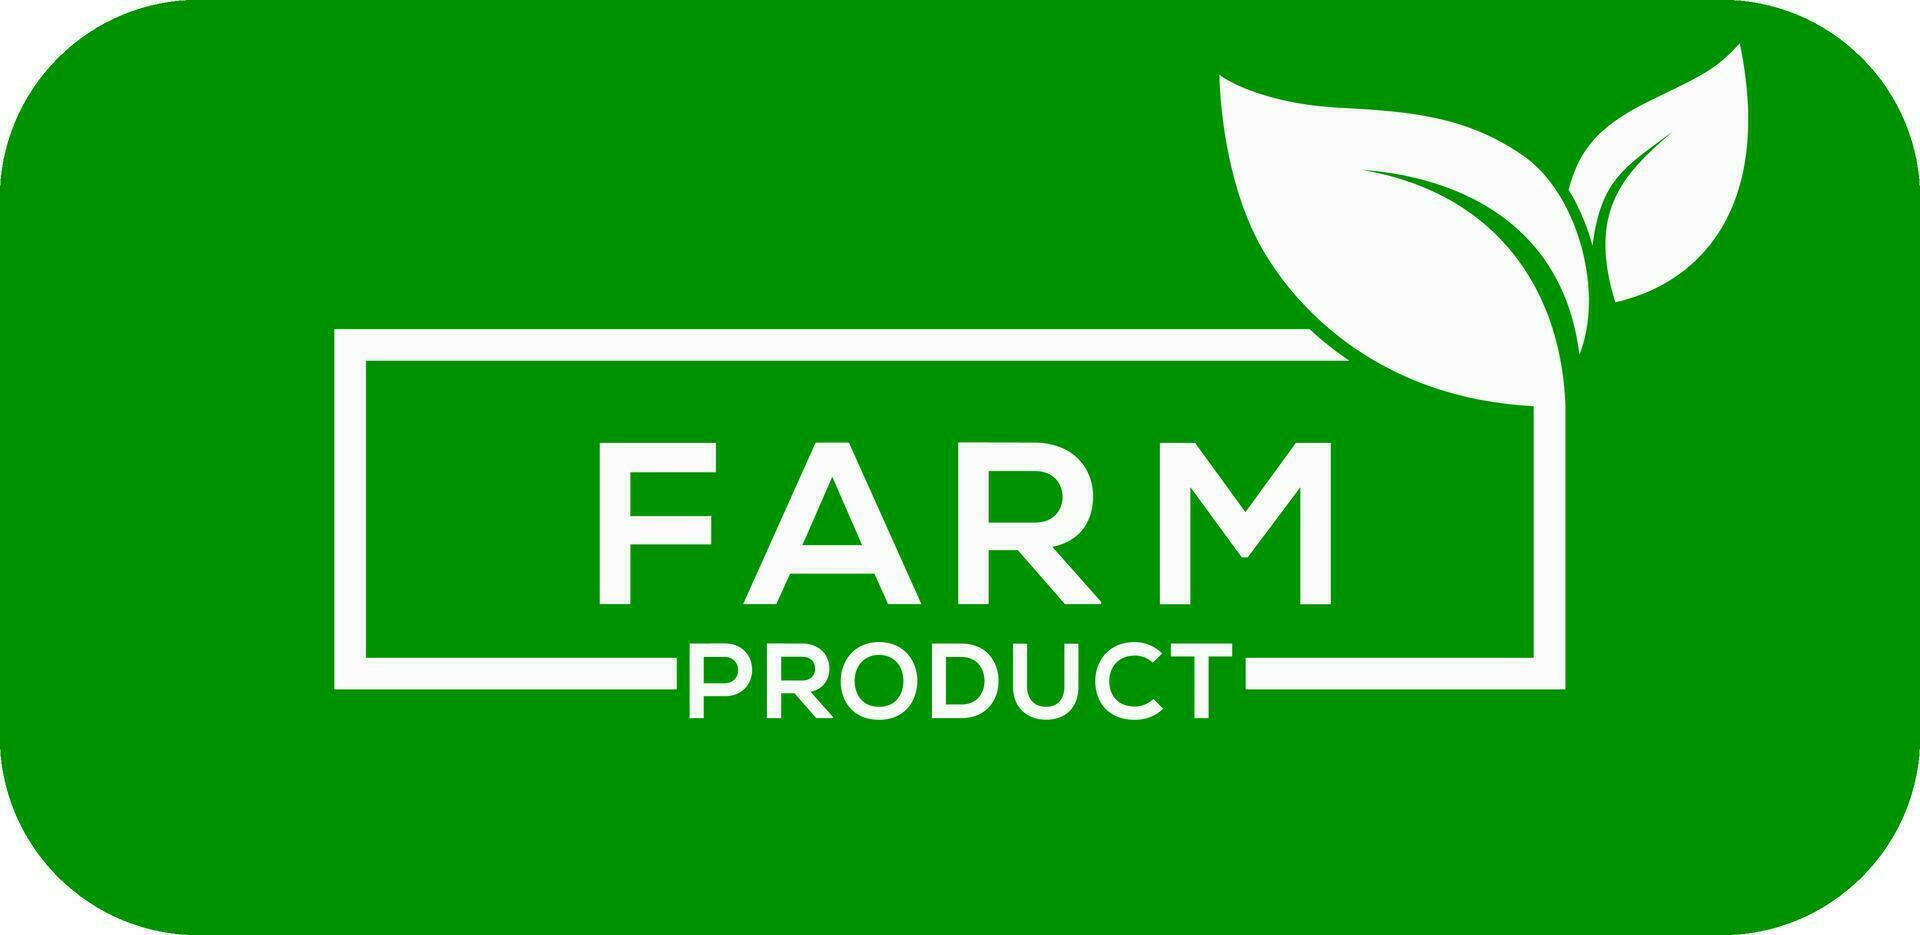 boerderij Product blad vector logo groen achtergrond boerderij Product blad logo of icoon